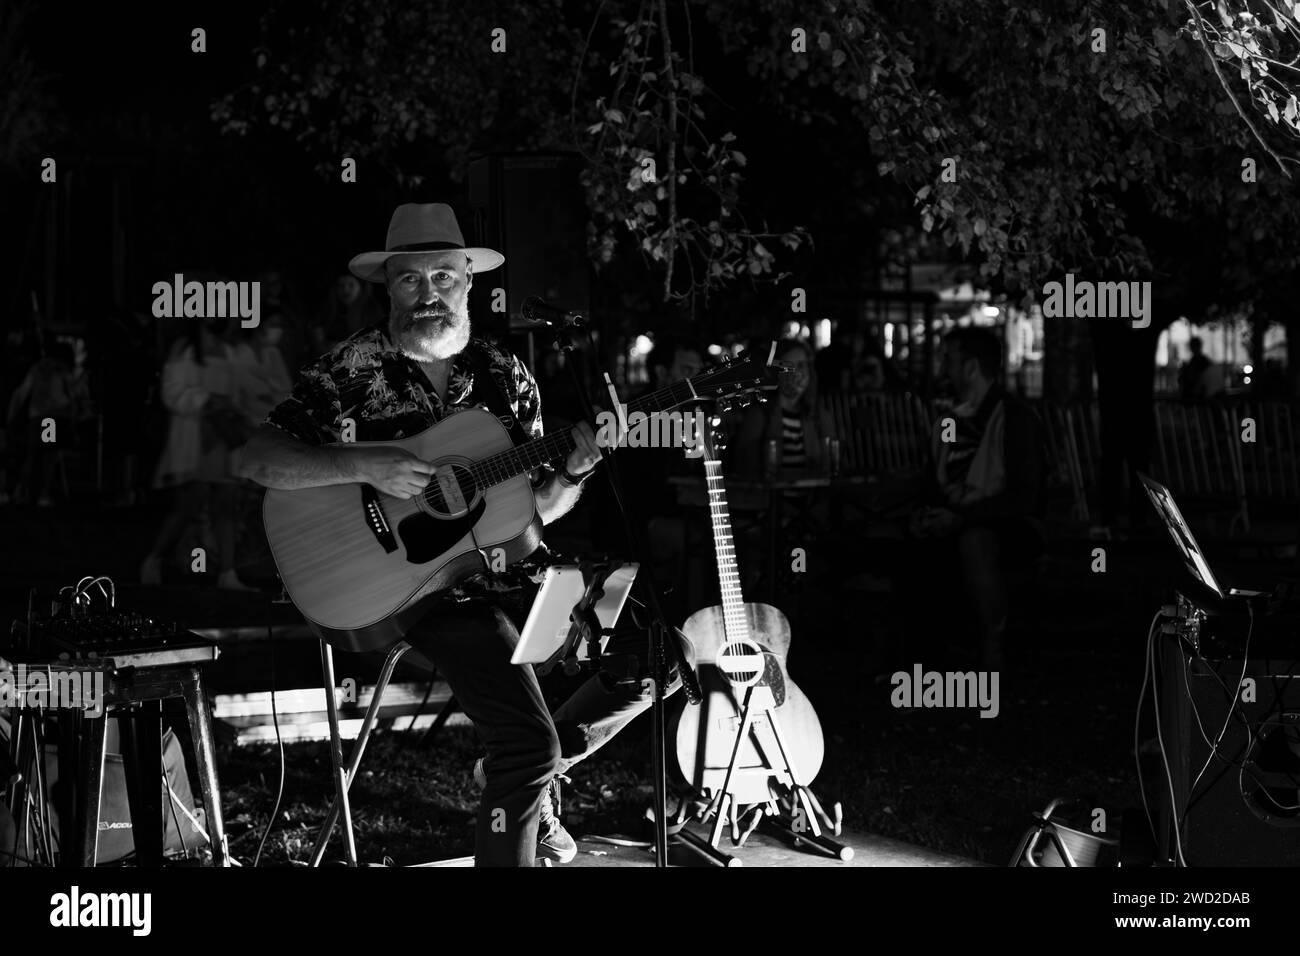 El guitarrista y cantante sentado y con sombrero canta en un concierto celebrado en Nigran durante la fiesta de la cerveza artesana Stock Photo